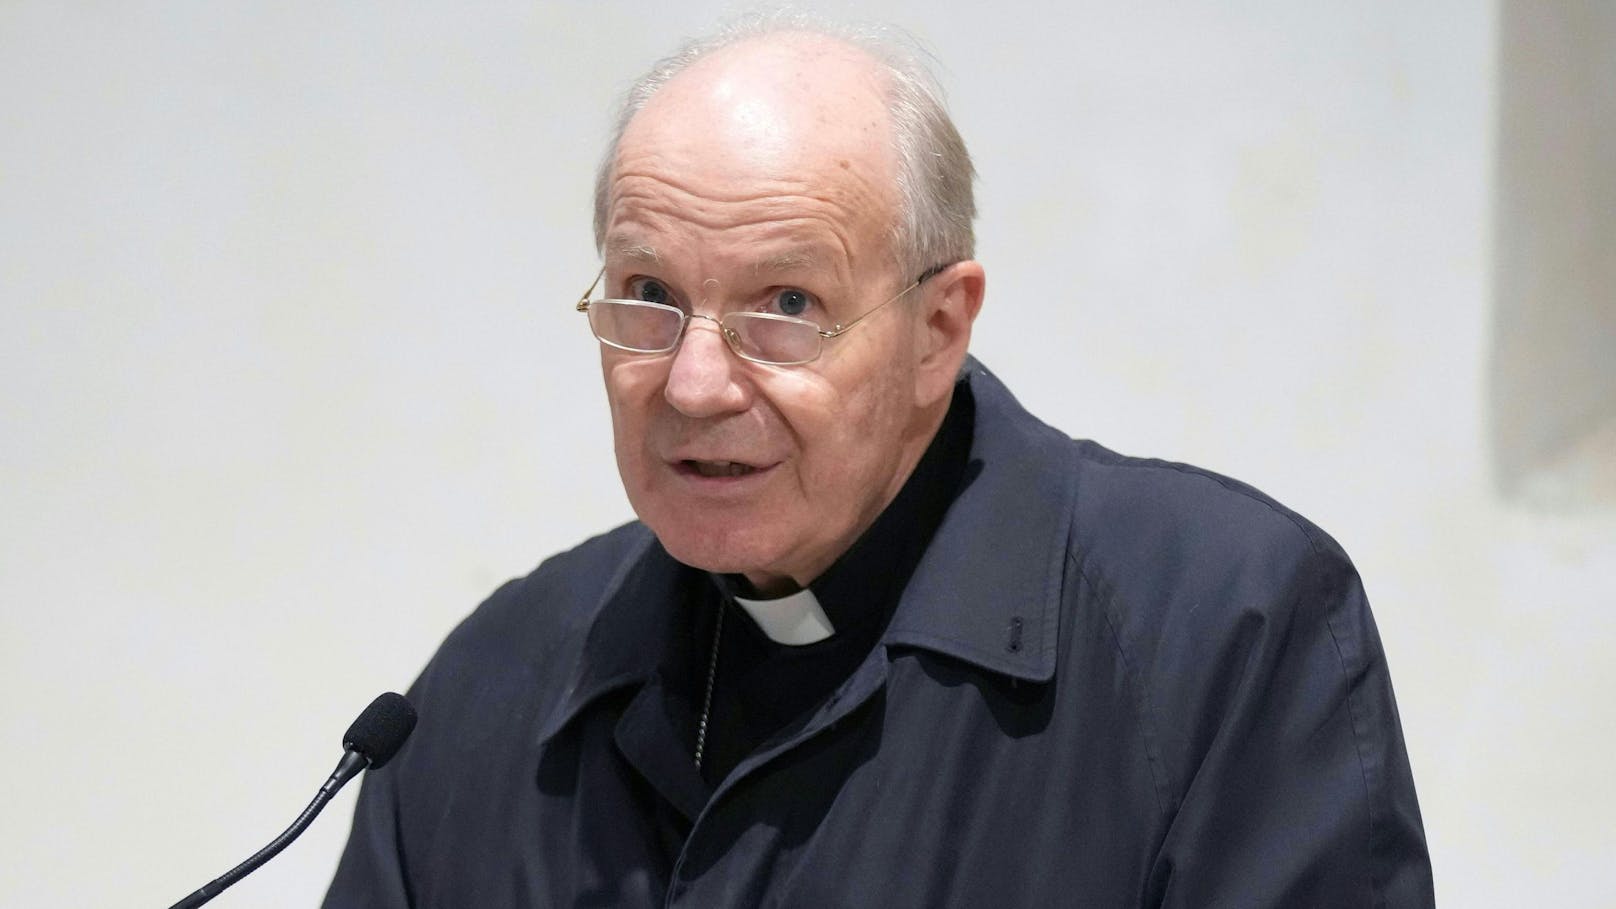 Erzbischof Kardinal Christoph Schönborn vertraut im kommenden Jahr auf&nbsp;Gott, die Natur, die Wissenschaft und Güte der Menschen.&nbsp;